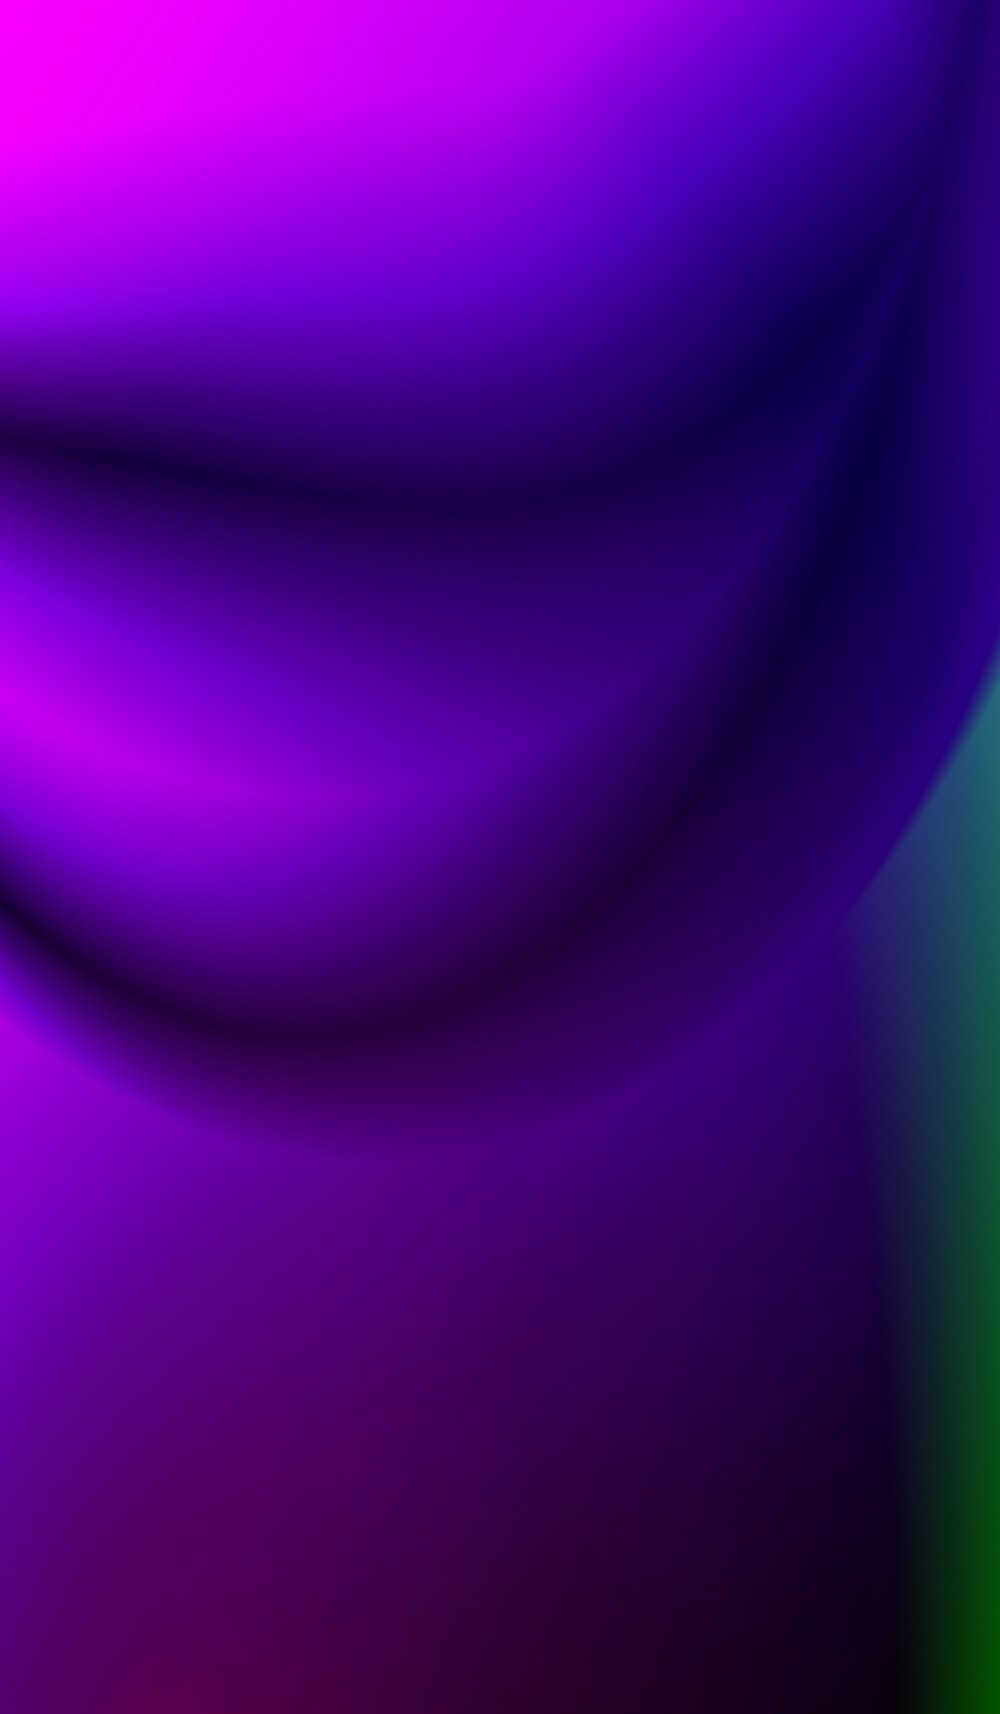 purple light on purple background